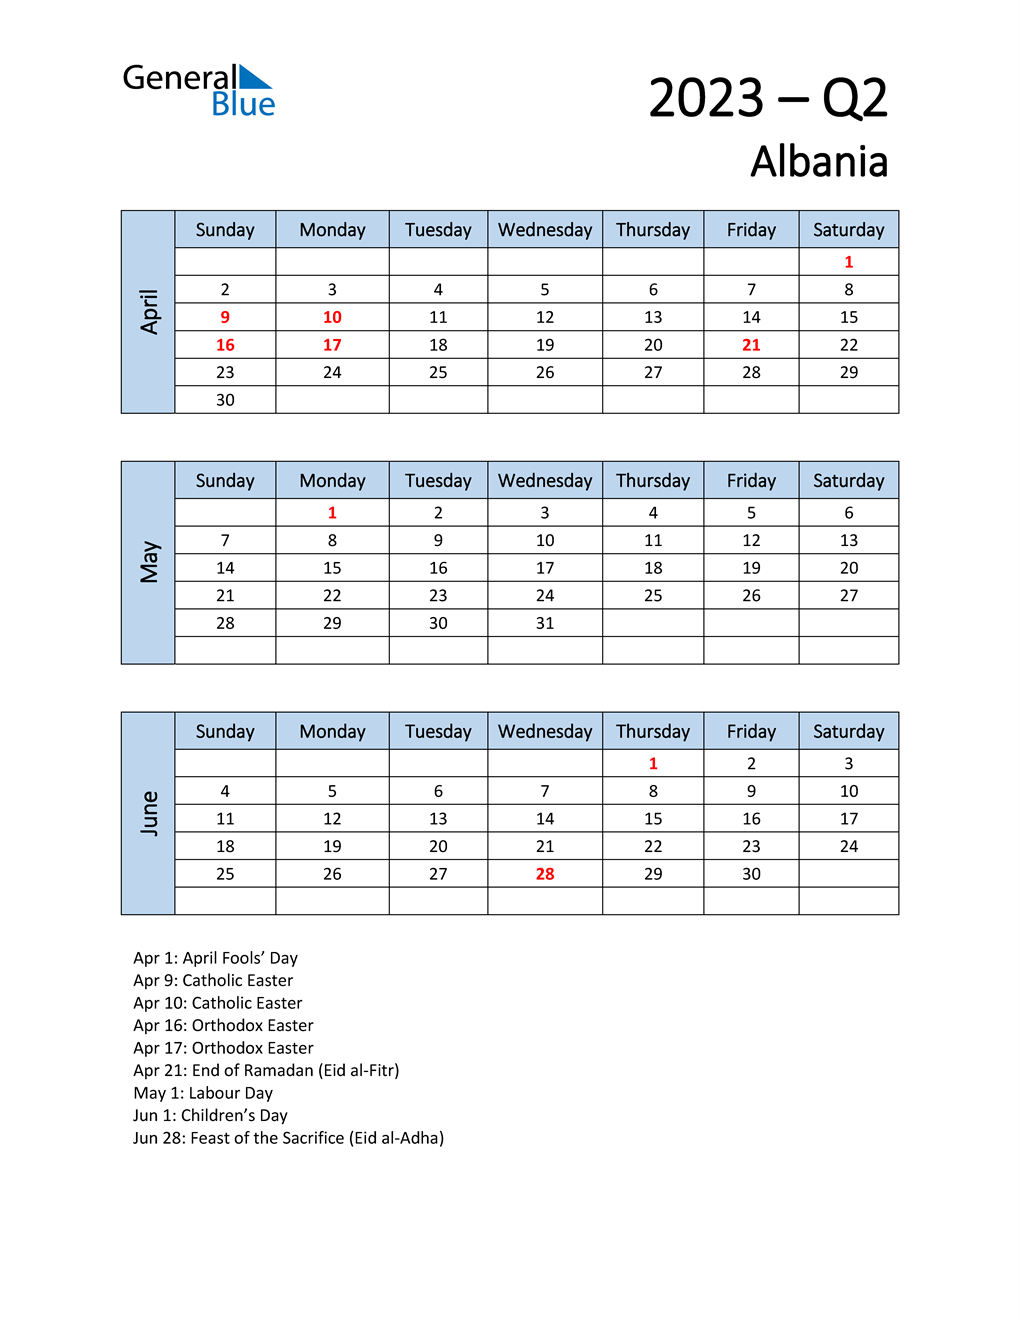  Free Q2 2023 Calendar for Albania